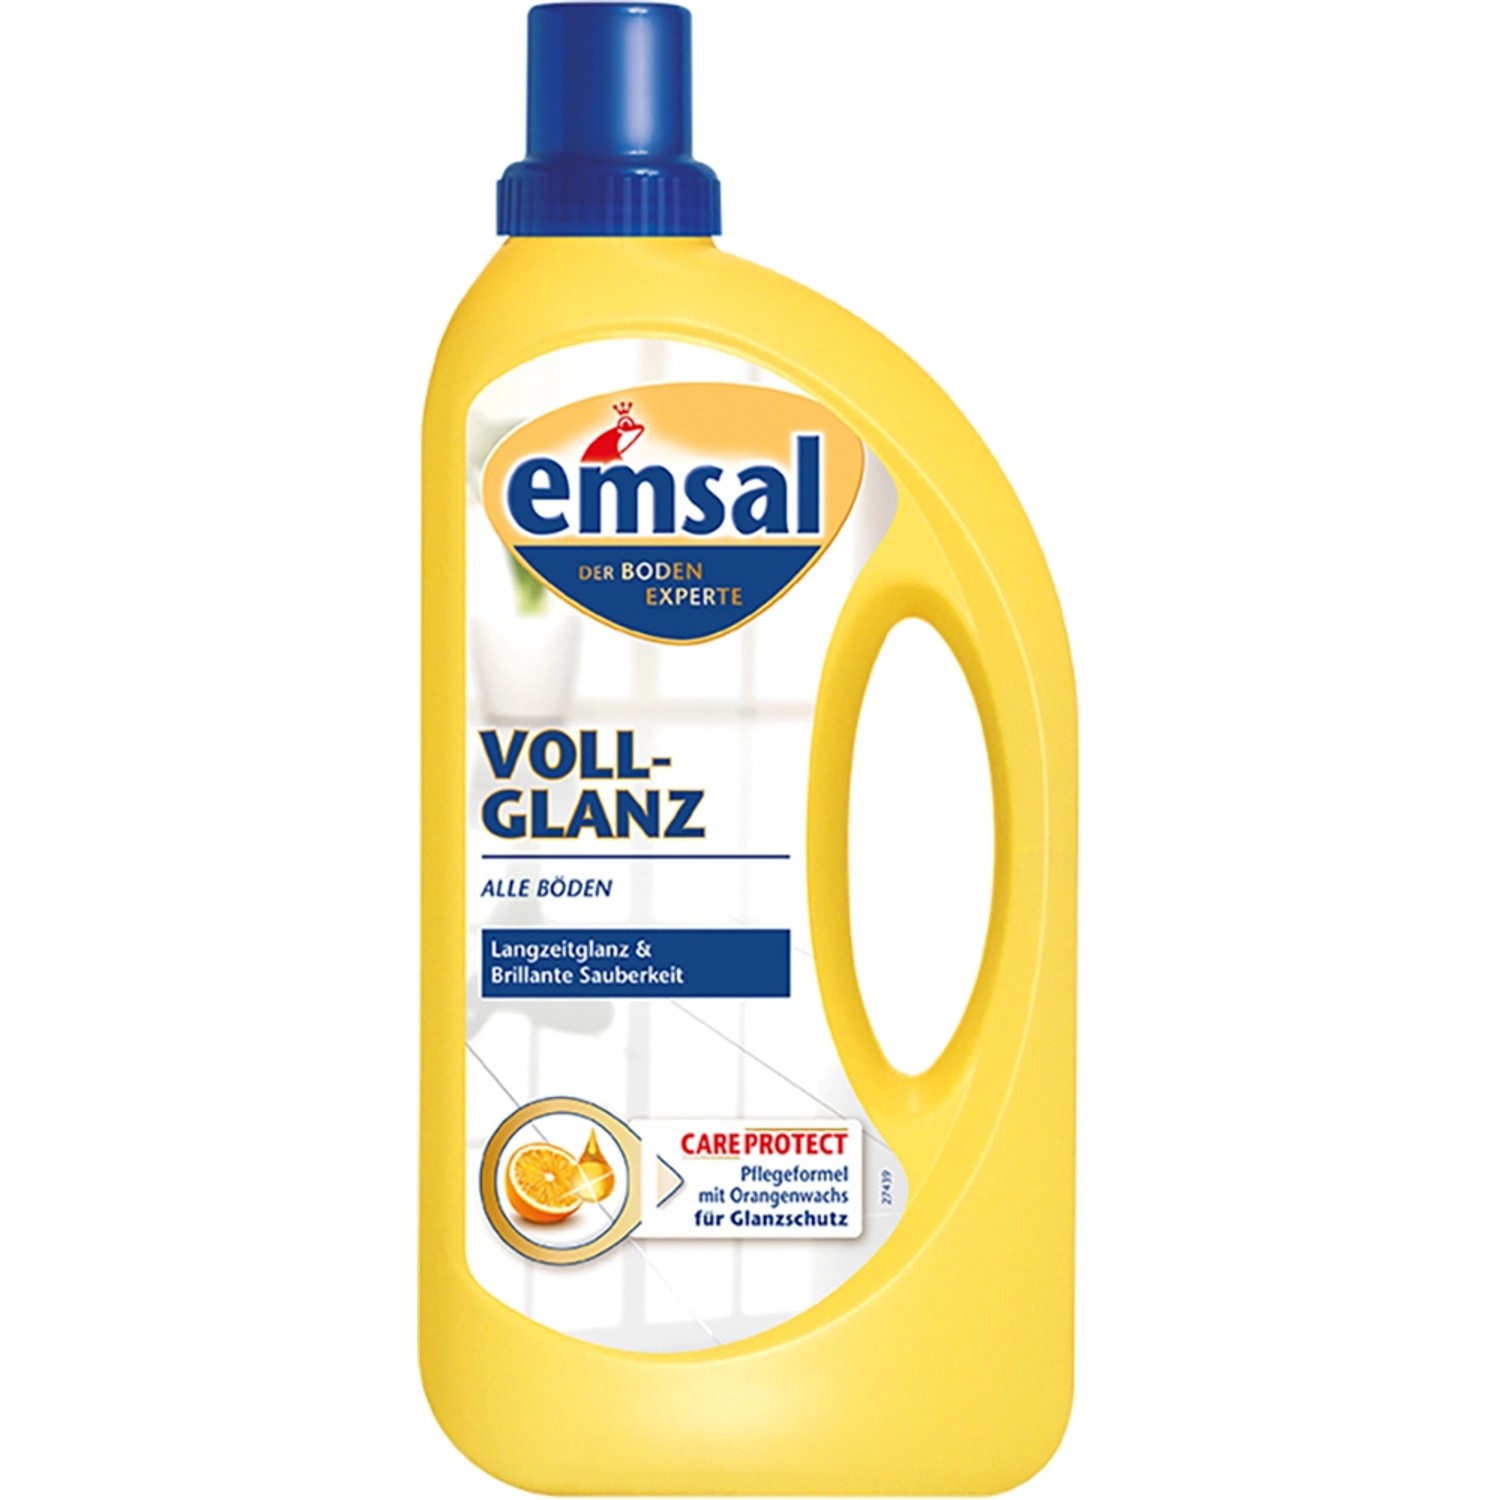 Emsal Voll-Glanz Bodenpflege 1000 ml von Emsal